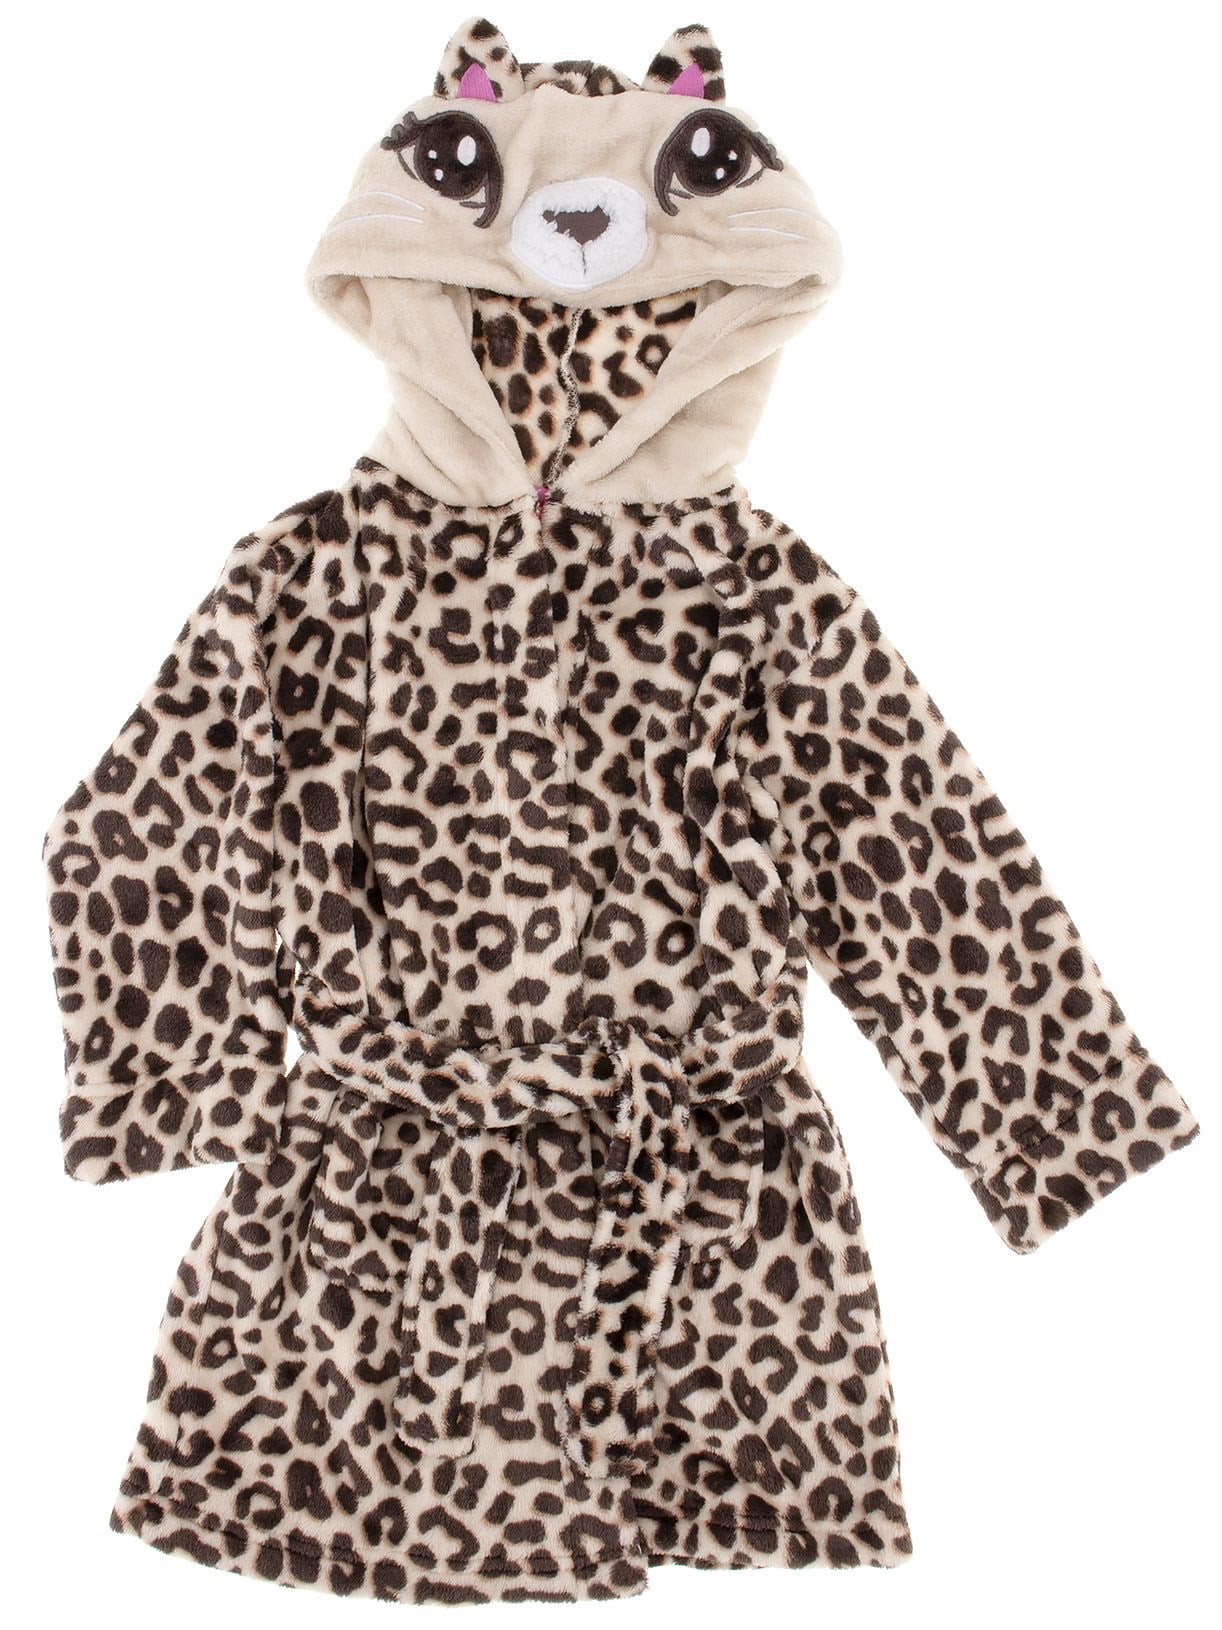 Girls Bathrobes Boys Flannel Robe Kids Hooded Sleepwear Fleece Leopard Print